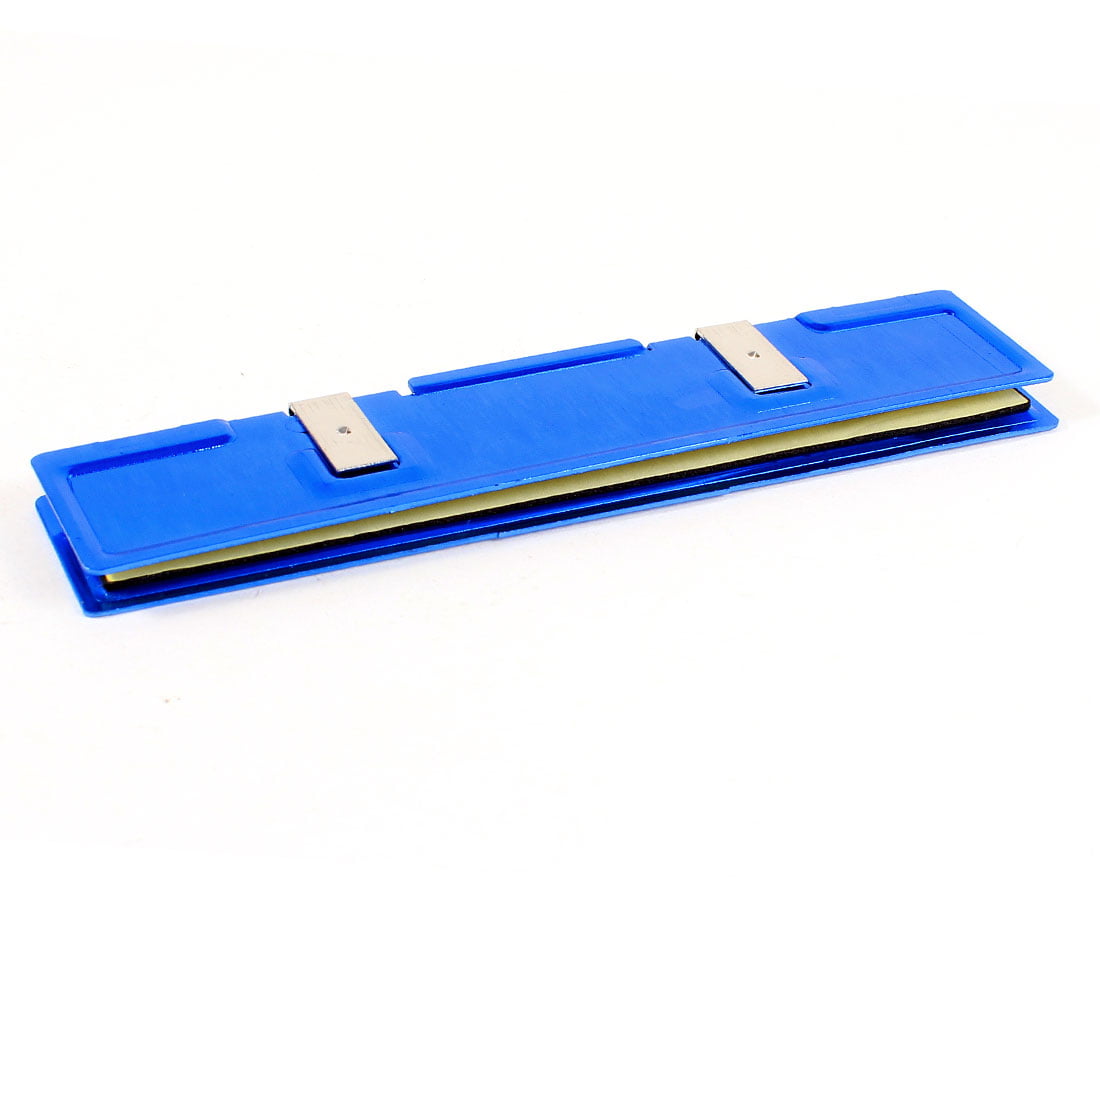 2 X DDR DDR2 DDR3 SDRAM RAM Memory Aluminum Cooler Heat Spreader Heatsink New